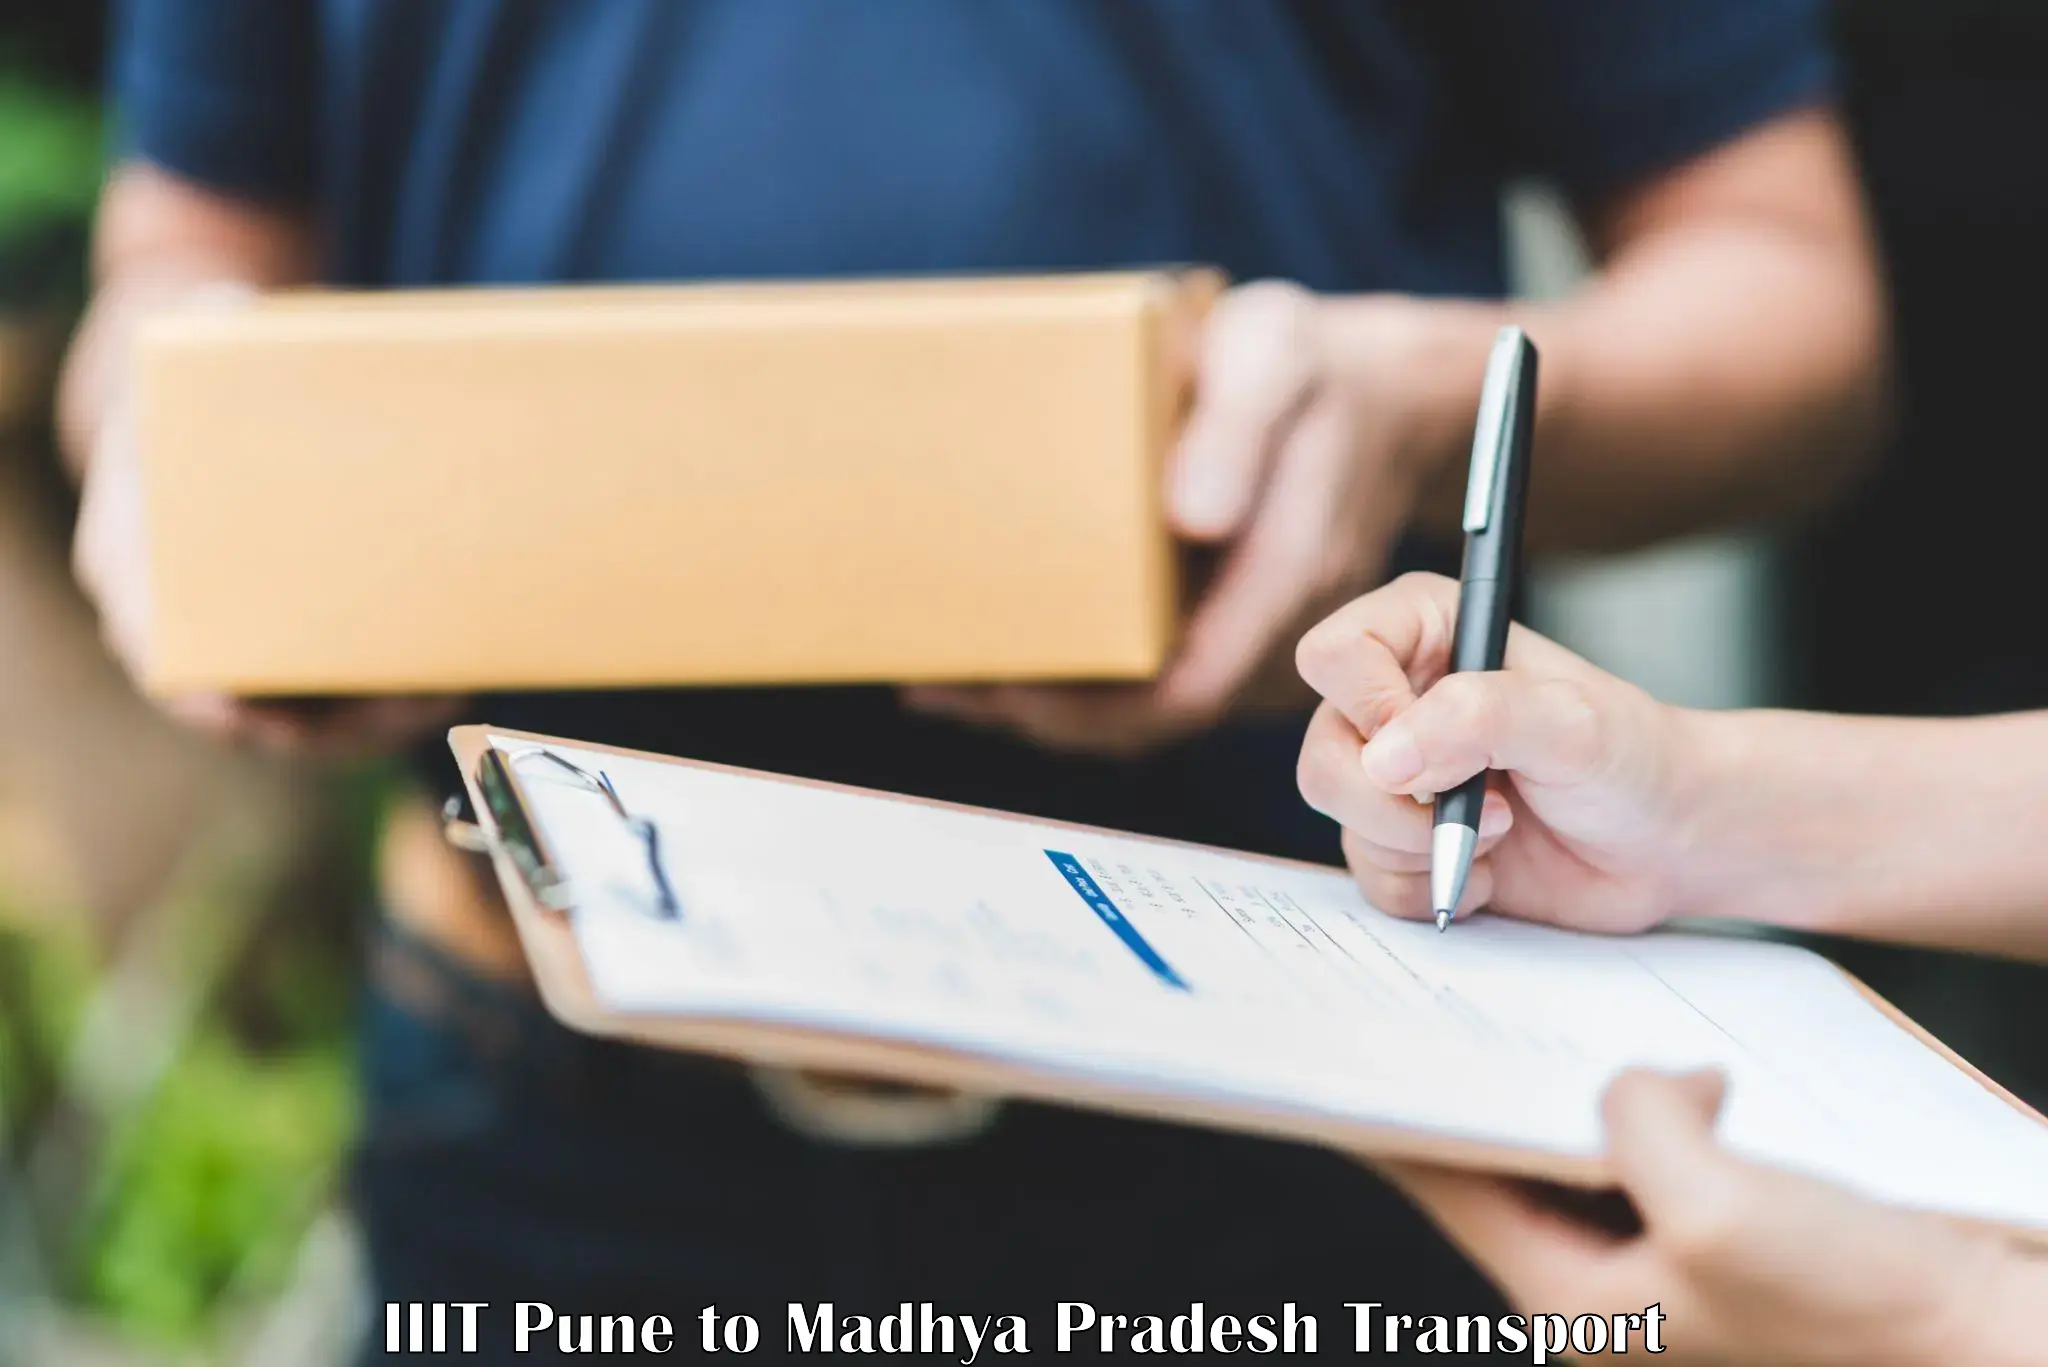 Online transport service IIIT Pune to IIT Indore